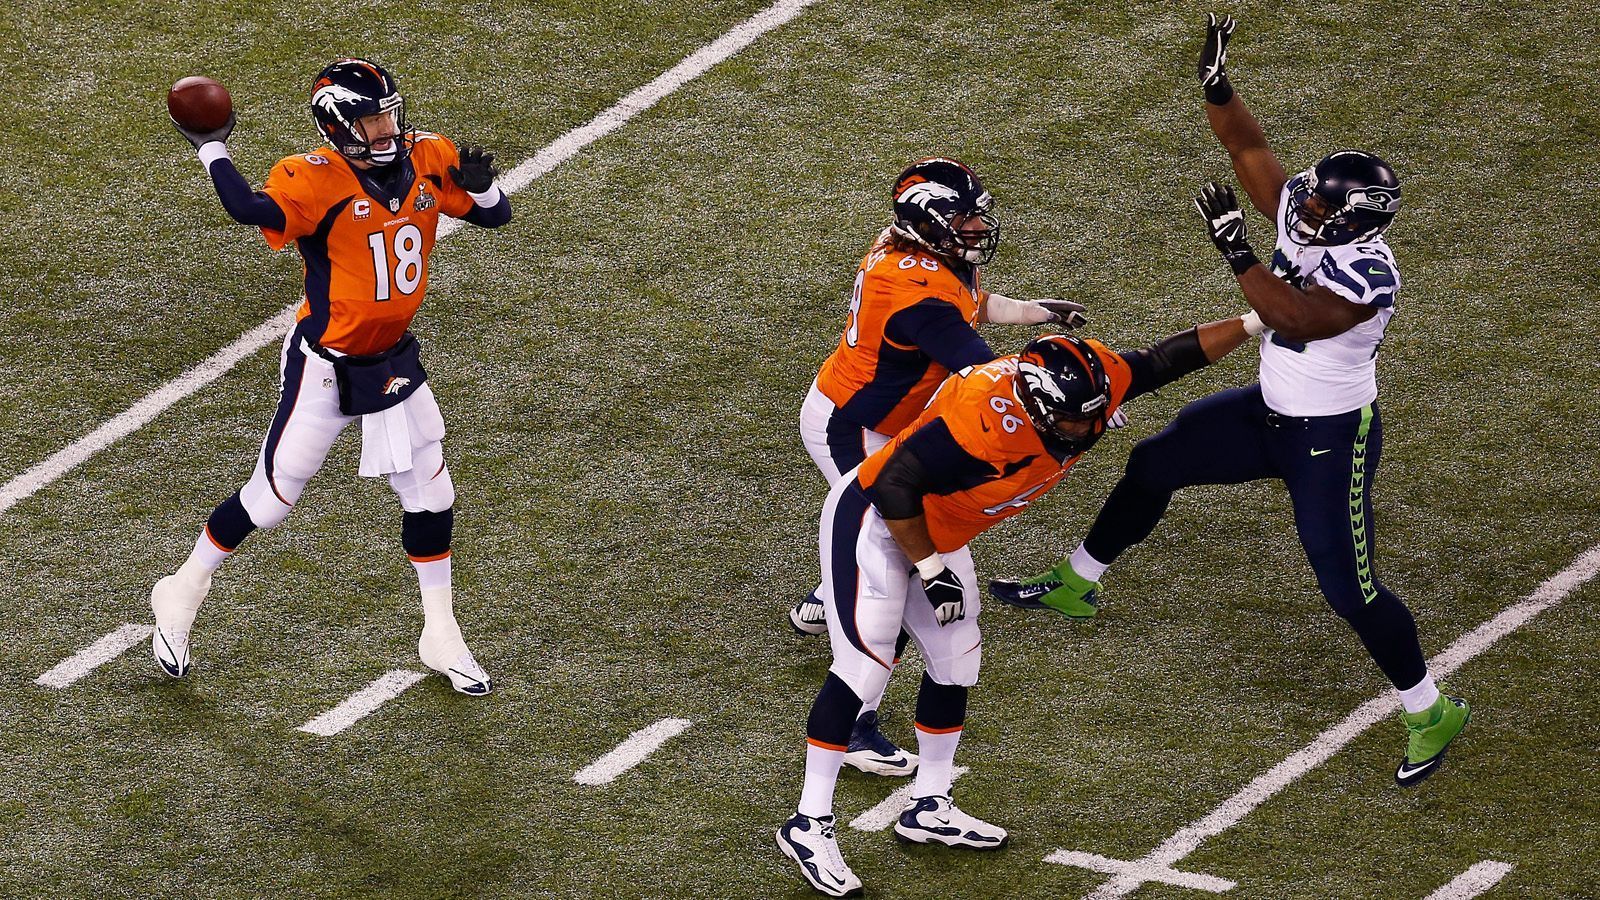 
                <strong>Peyton Manning, Denver Broncos - Super Bowl XLVIII</strong><br>
                Vier Jahre später. Ähnliches Szenario, anderes Team, gleicher Ausgang. Im Dress der Denver Broncos zauberte Peyton Manning eine Saison für die Geschichtsbücher hin. 55 Touchdowns, 5.477 Passing Yards sind bis heute NFL-Rekorde, dazu hatte er ein Passer Rating von 115,1. Der heutige Hall of Famer brachte mit den Broncos 606 Punkte aufs Board und führte sein Team zu einer 13-3-Bilanz in der Regular Season. Sein fünfter MVP-Titel war unbestritten. In den folgenden beiden Playoff-Partien schien Manning aber all sein Pulver verschossen zu haben. Im Super Bowl XLVIII traf er auf die Seattle Seahawks mit deren besten Defense der Liga und kassierte eine der höchsten Pleiten der Super-Bowl-Ära (8:43). Erst beim Stand von 0:36 gelang Manning der erste und einzige Touchdown. Er beendete das Spiel mit 280 Yards, einem Touchdown und zwei Interceptions. Seine 34 Completions waren dennoch zu diesem Zeitpunkt in einer Super-Bowl-Rekord. Seinen zweiten Ring sollte Manning zwei Jahre später bekommen - diesmal stand der MVP-Gewinner auf der anderen Seite.
              